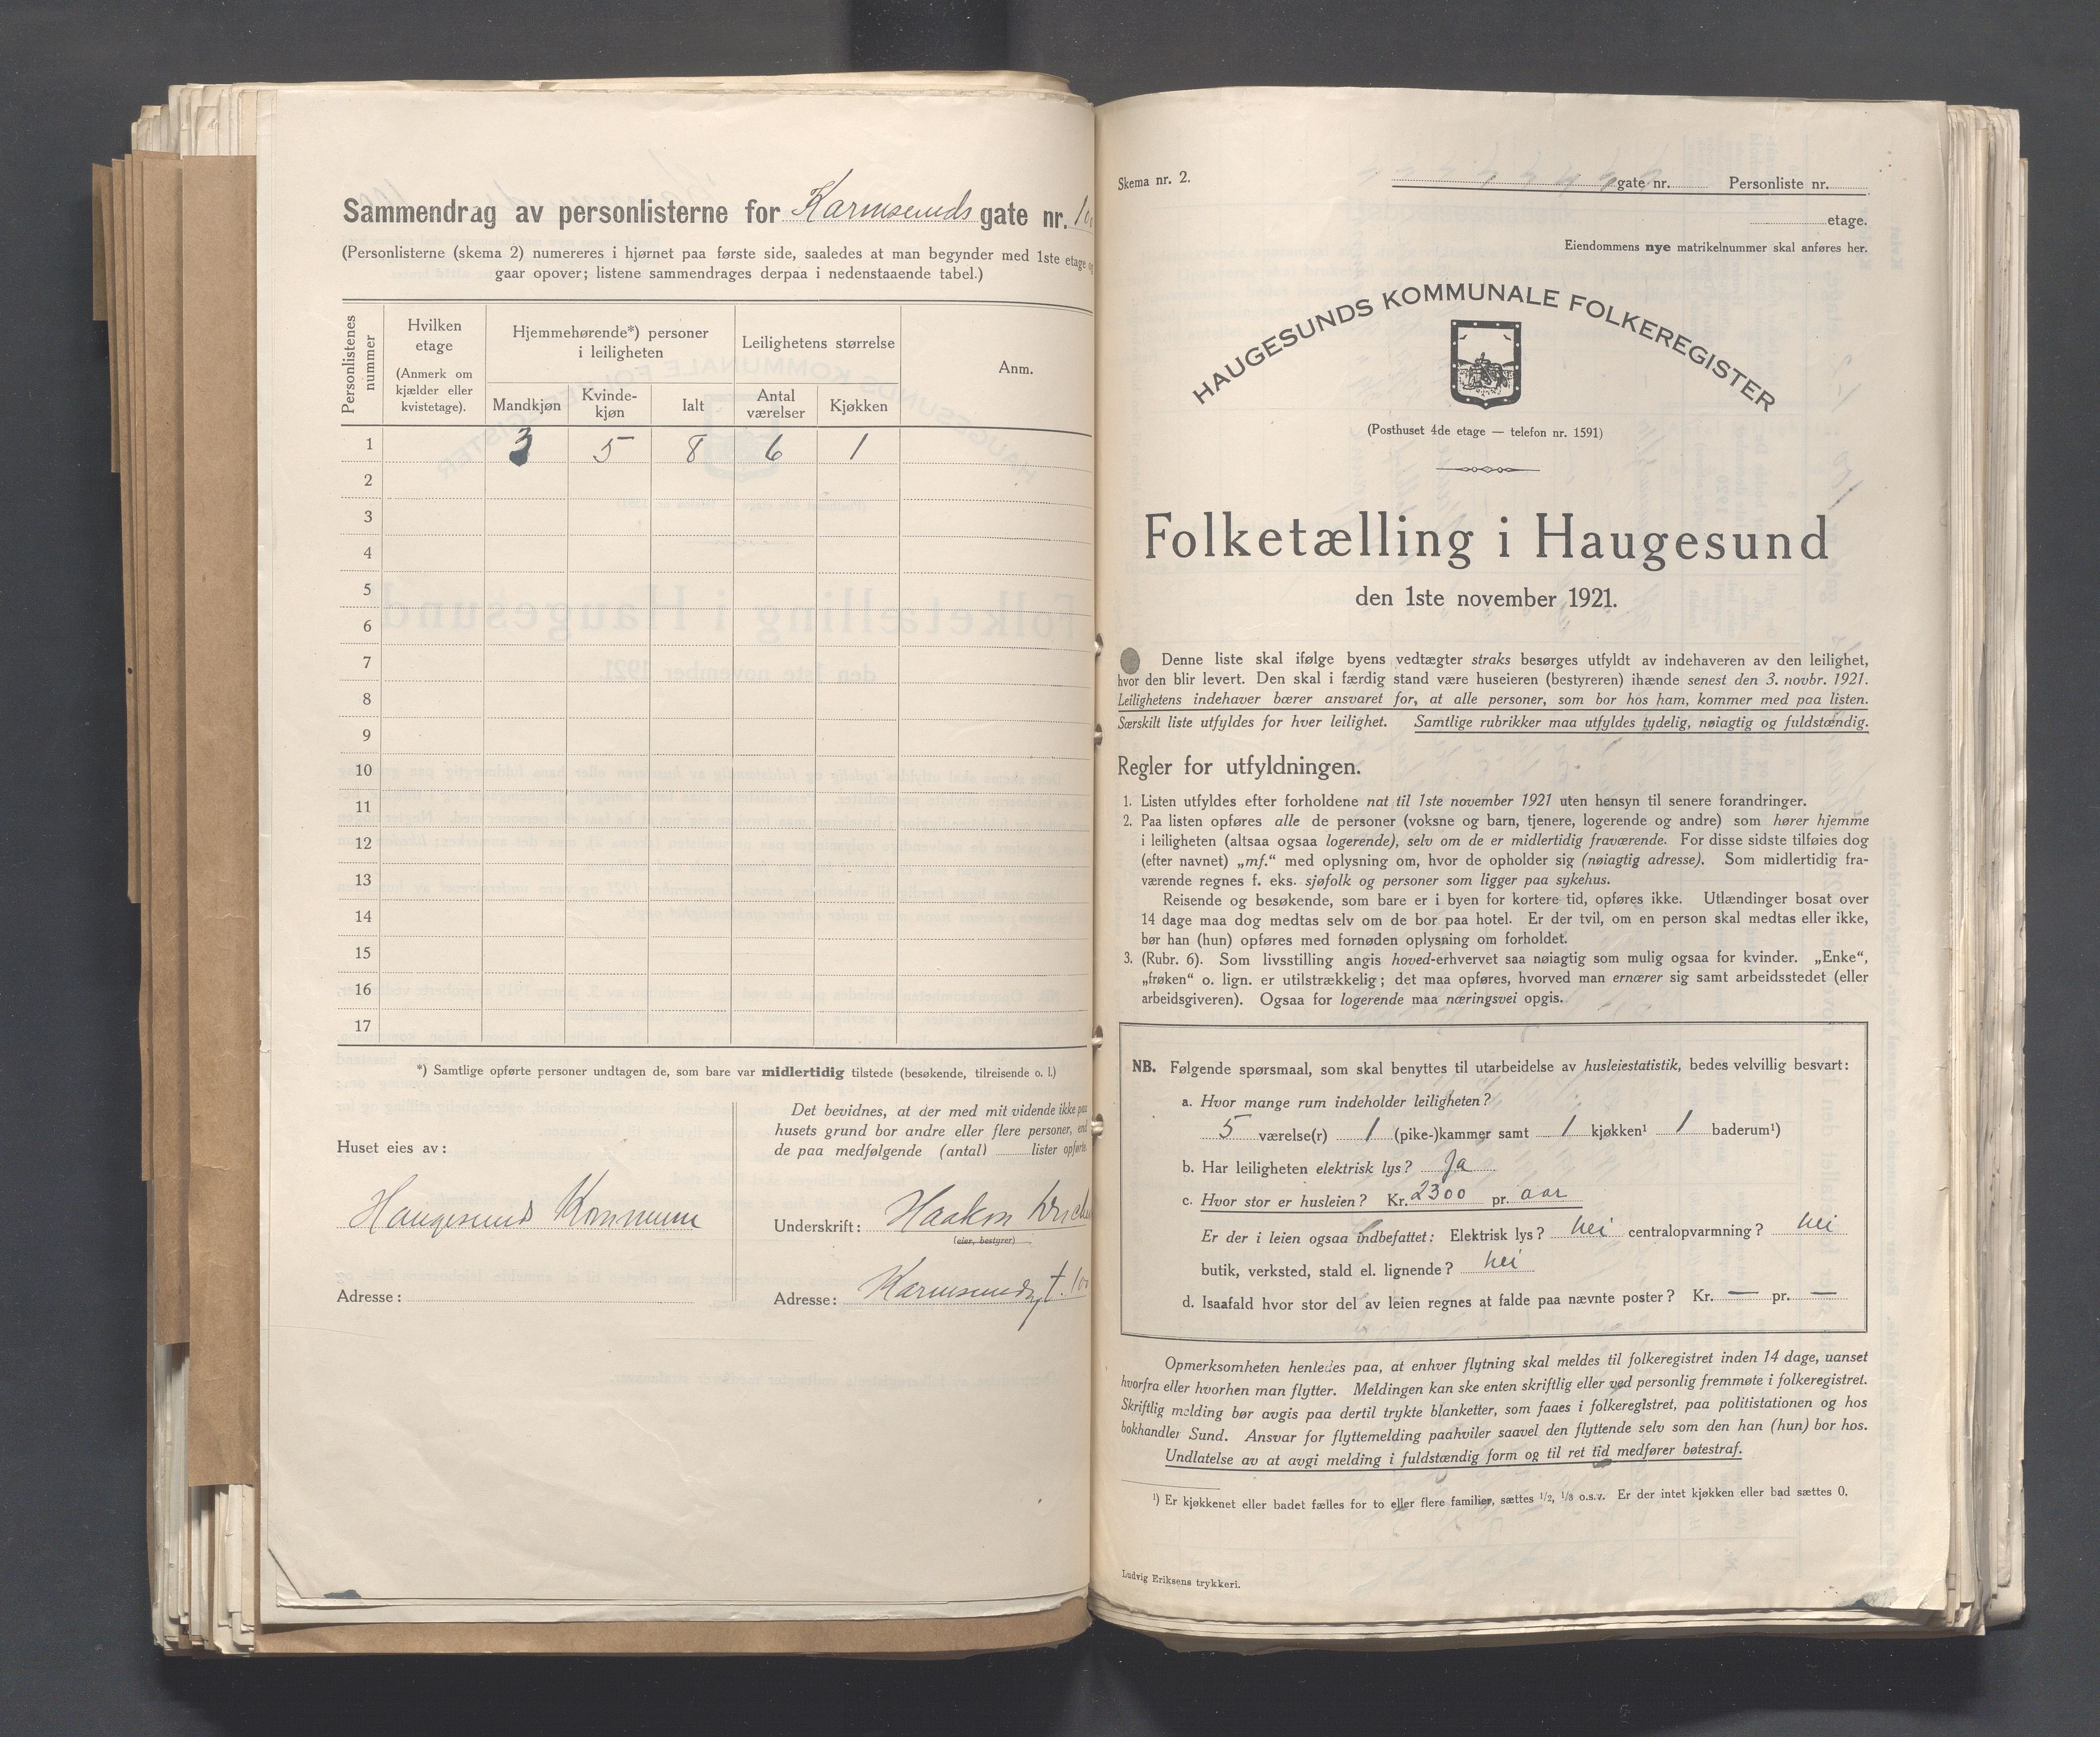 IKAR, Local census 1.11.1921 for Haugesund, 1921, p. 2448